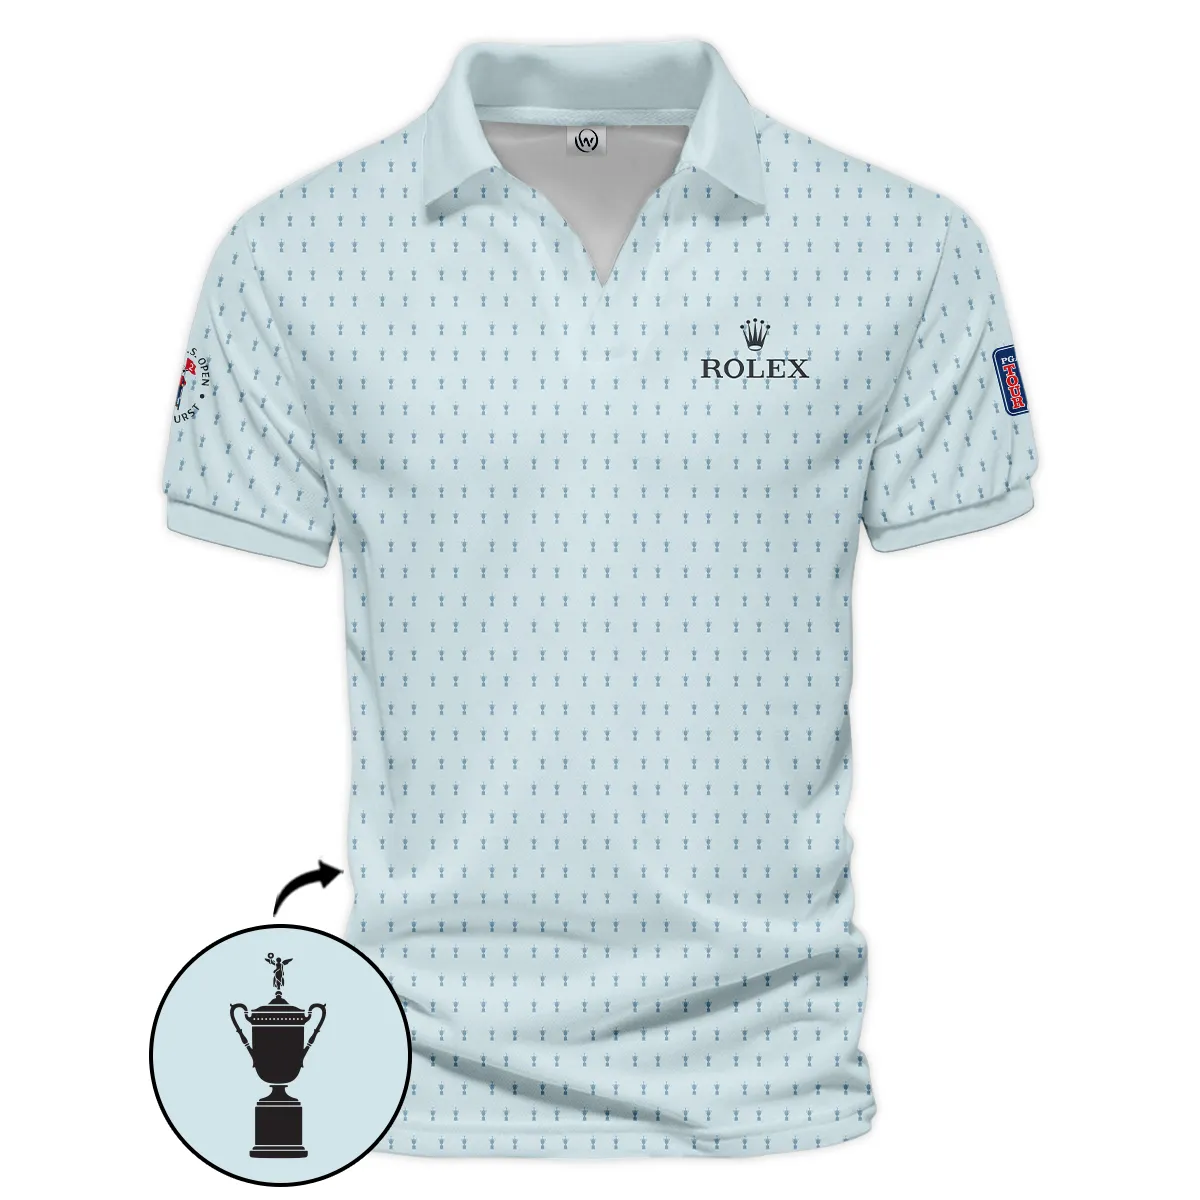 Golf Pattern Cup Light Blue Mix Green 124th U.S. Open Pinehurst Pinehurst Rolex Zipper Polo Shirt Style Classic